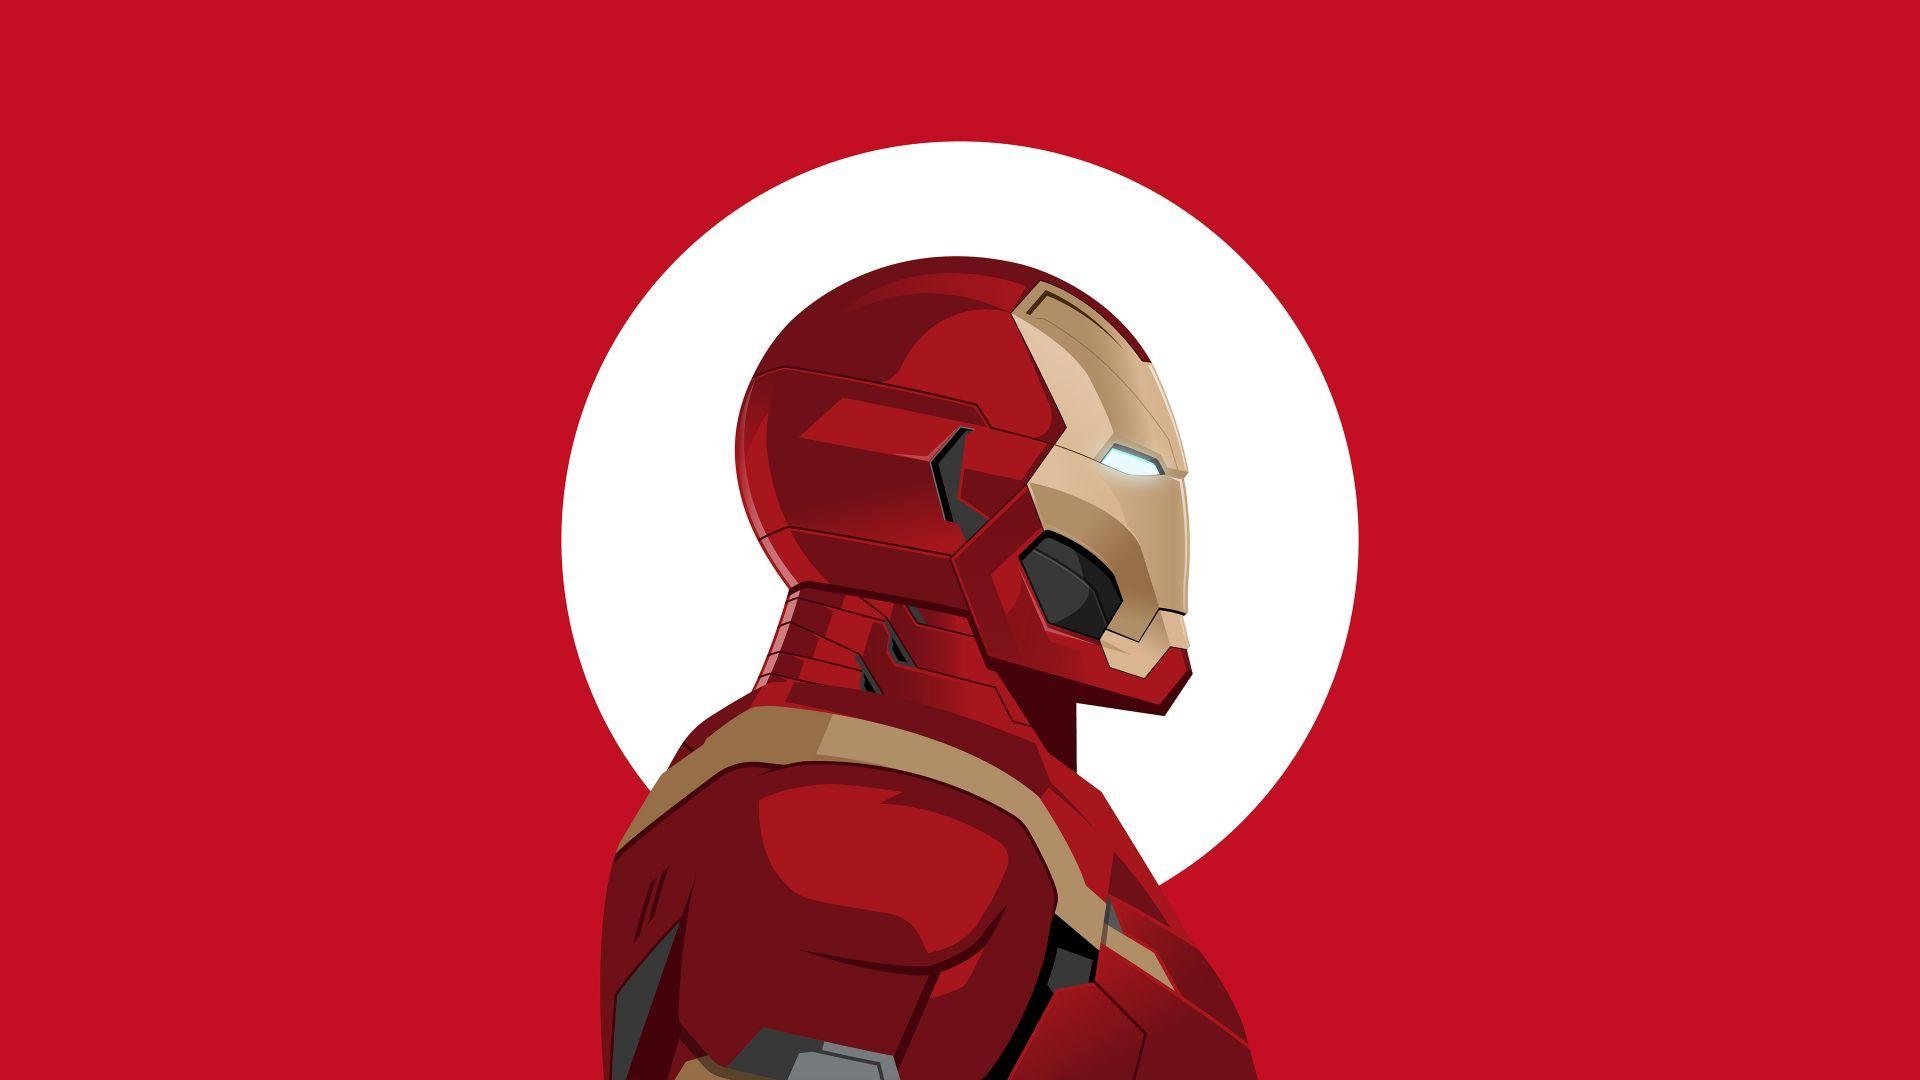 Iron Man, Minimal art, 4K. Iron man wallpaper, Man